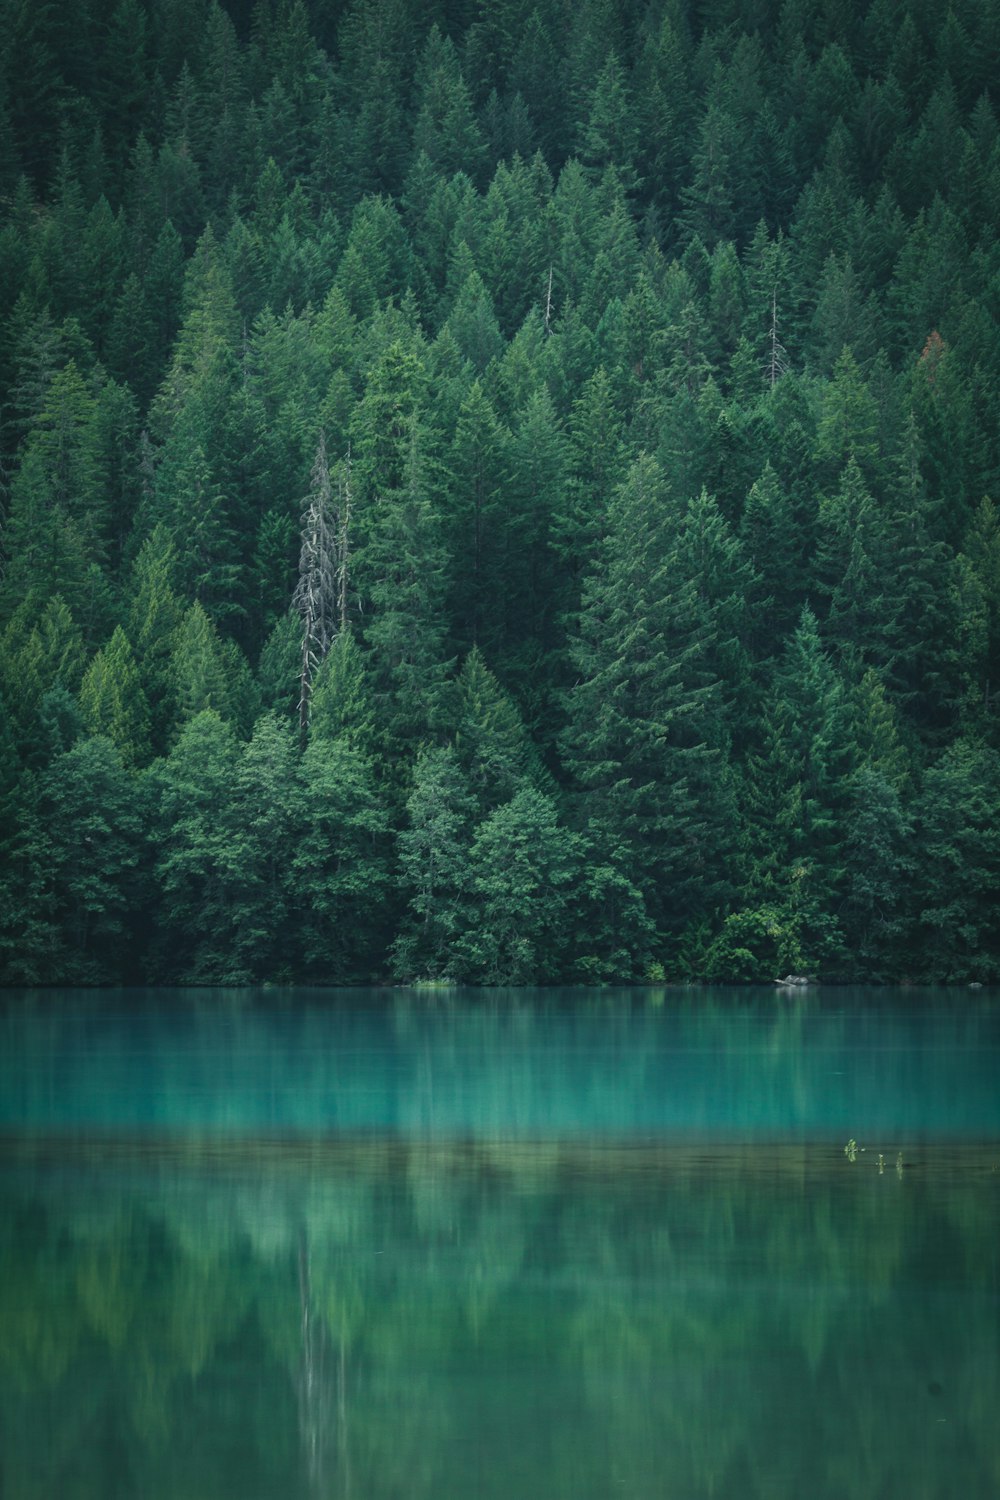 árboles de hoja verde a través de un cuerpo de agua tranquilo